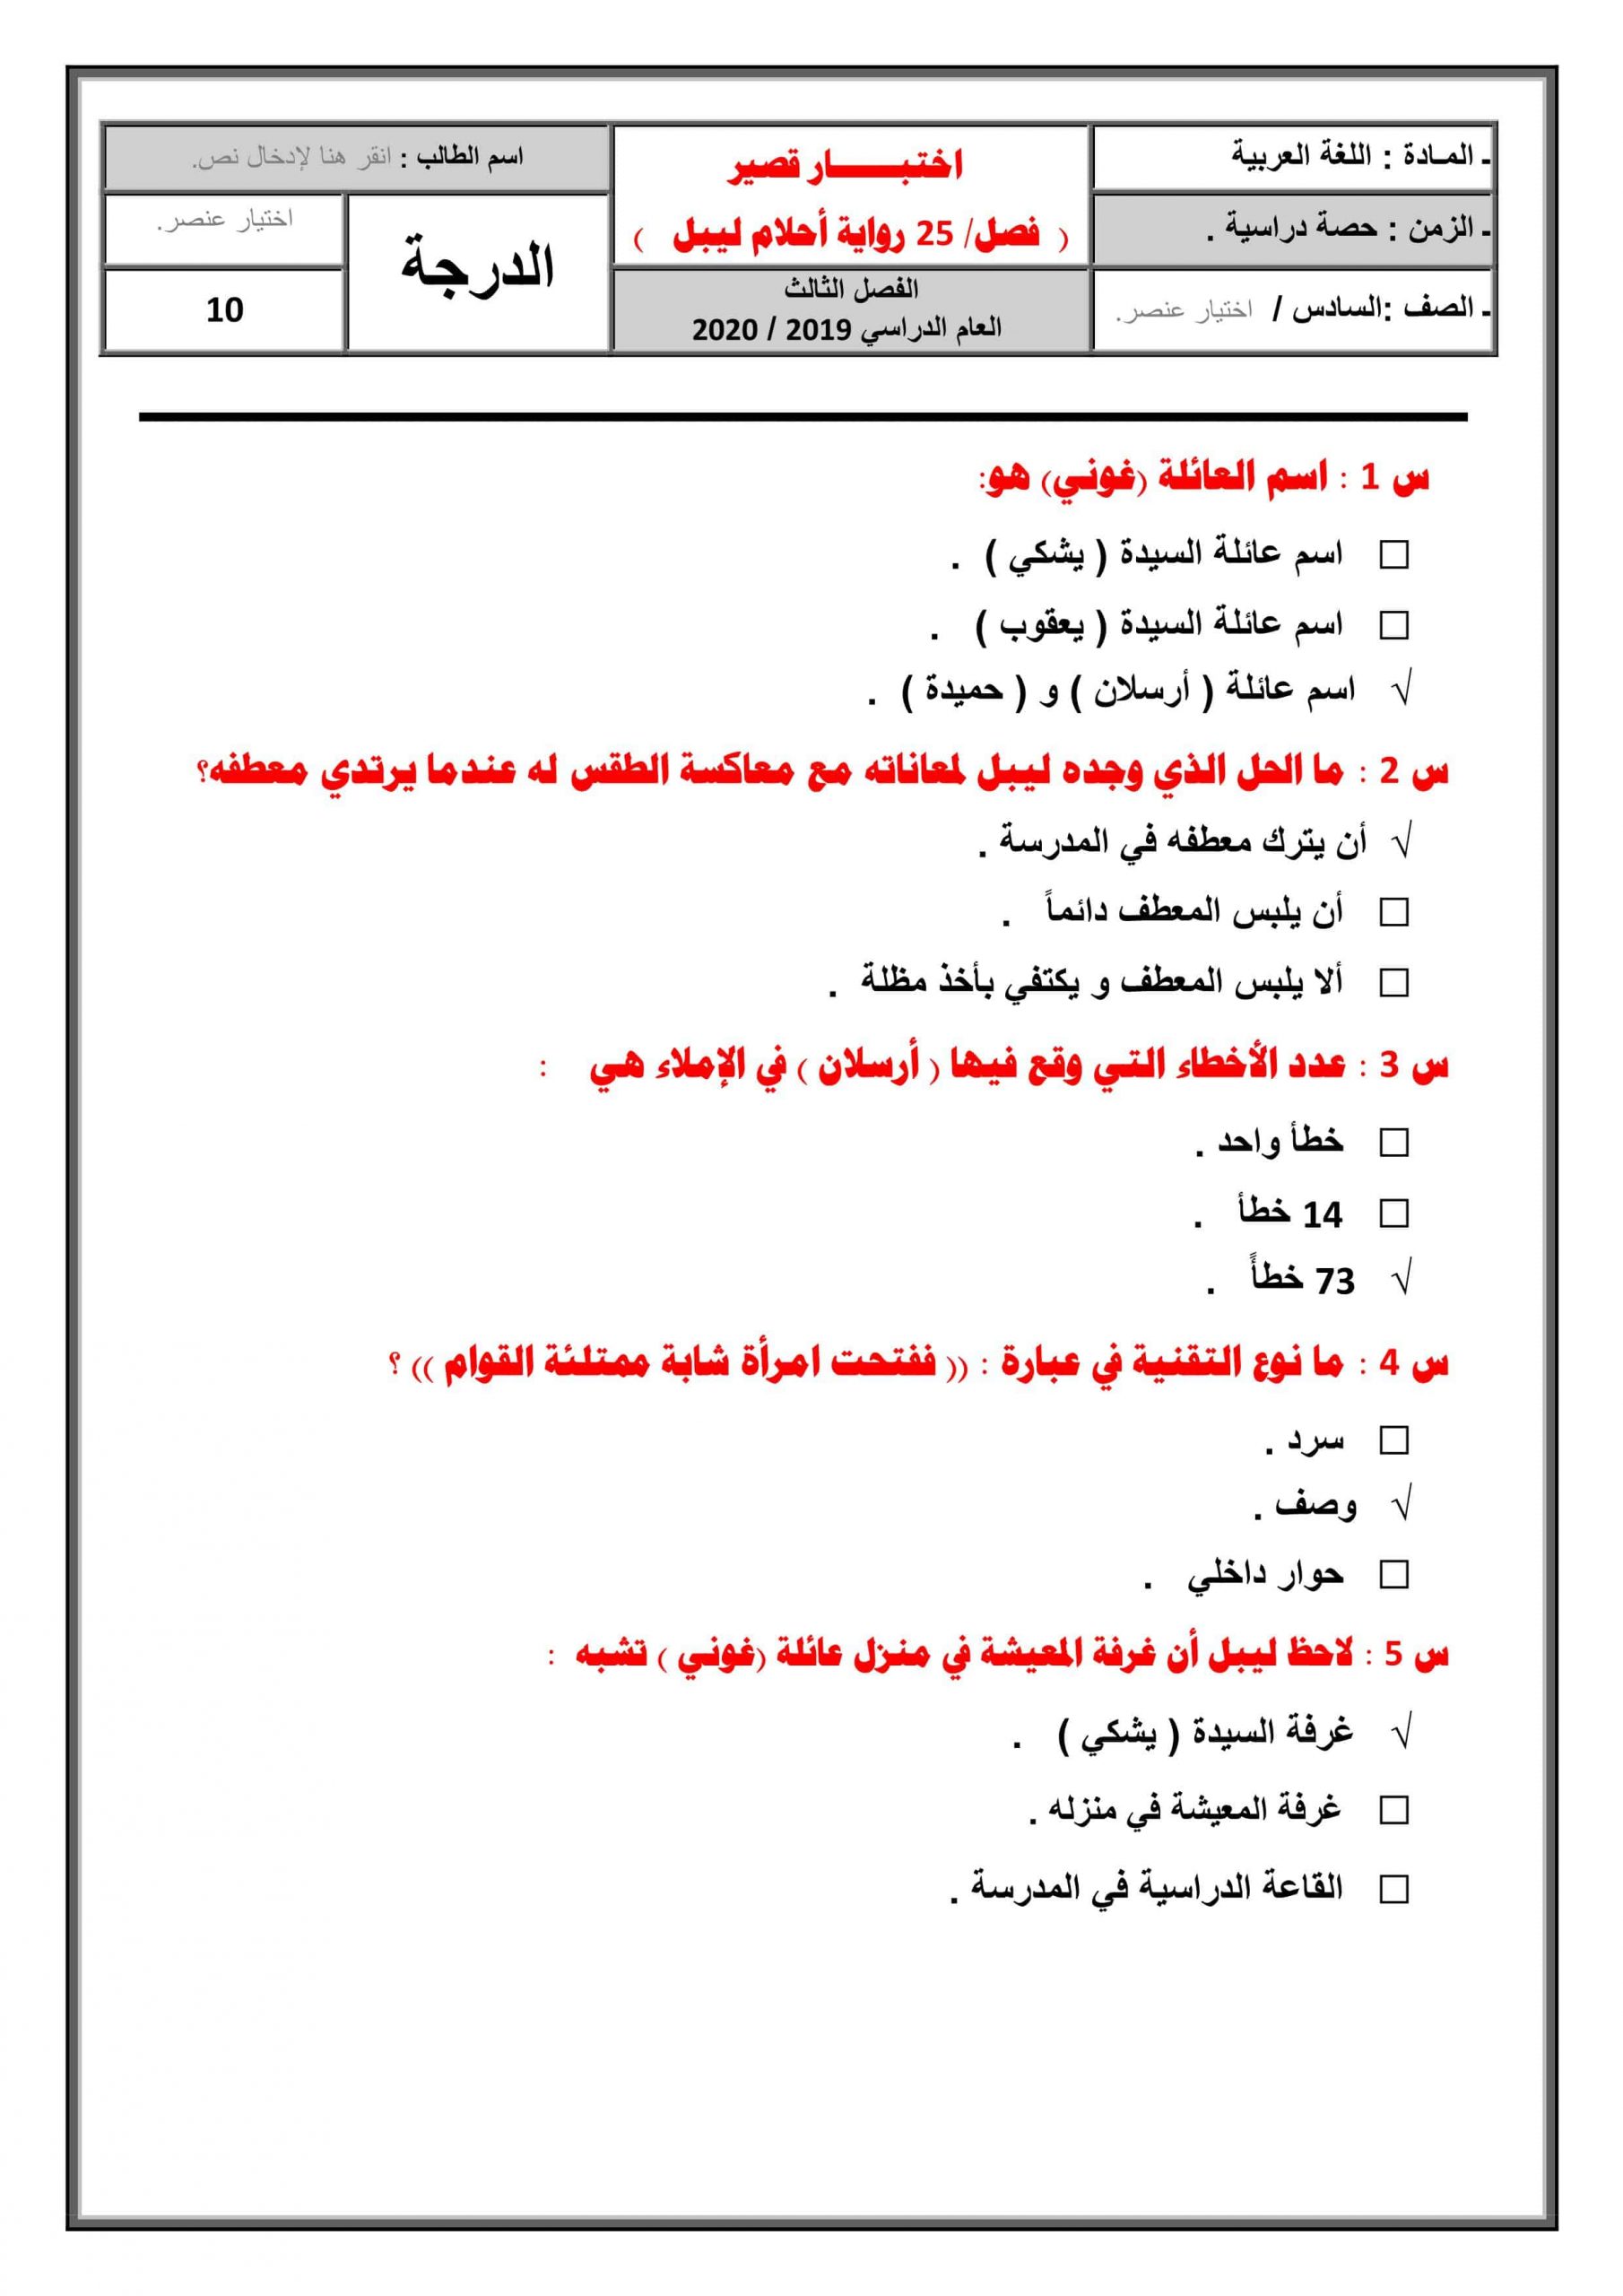 حل اختبار قصير لرواية أحلام ليبل السعيدة الفصل الخامس والعشرون الصف السادس مادة اللغة العربية